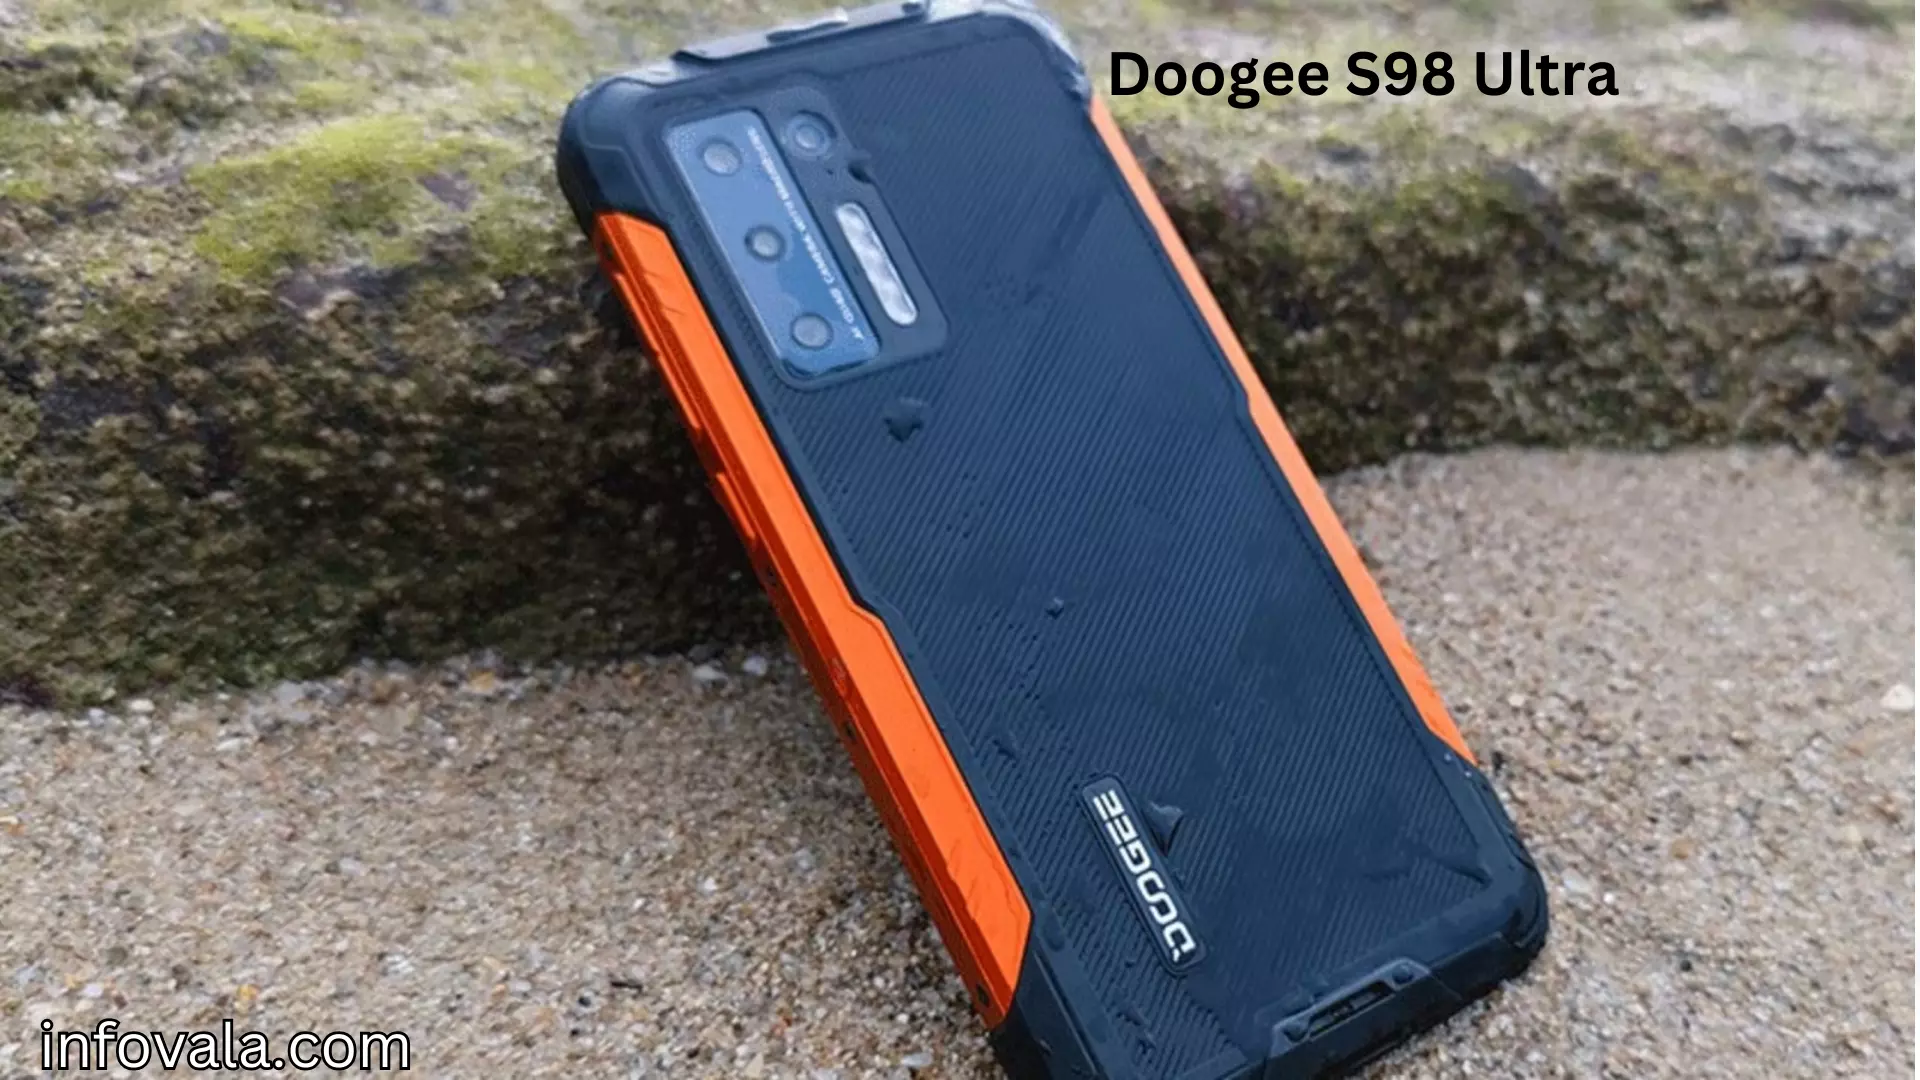 Doogee S98 Ultra 